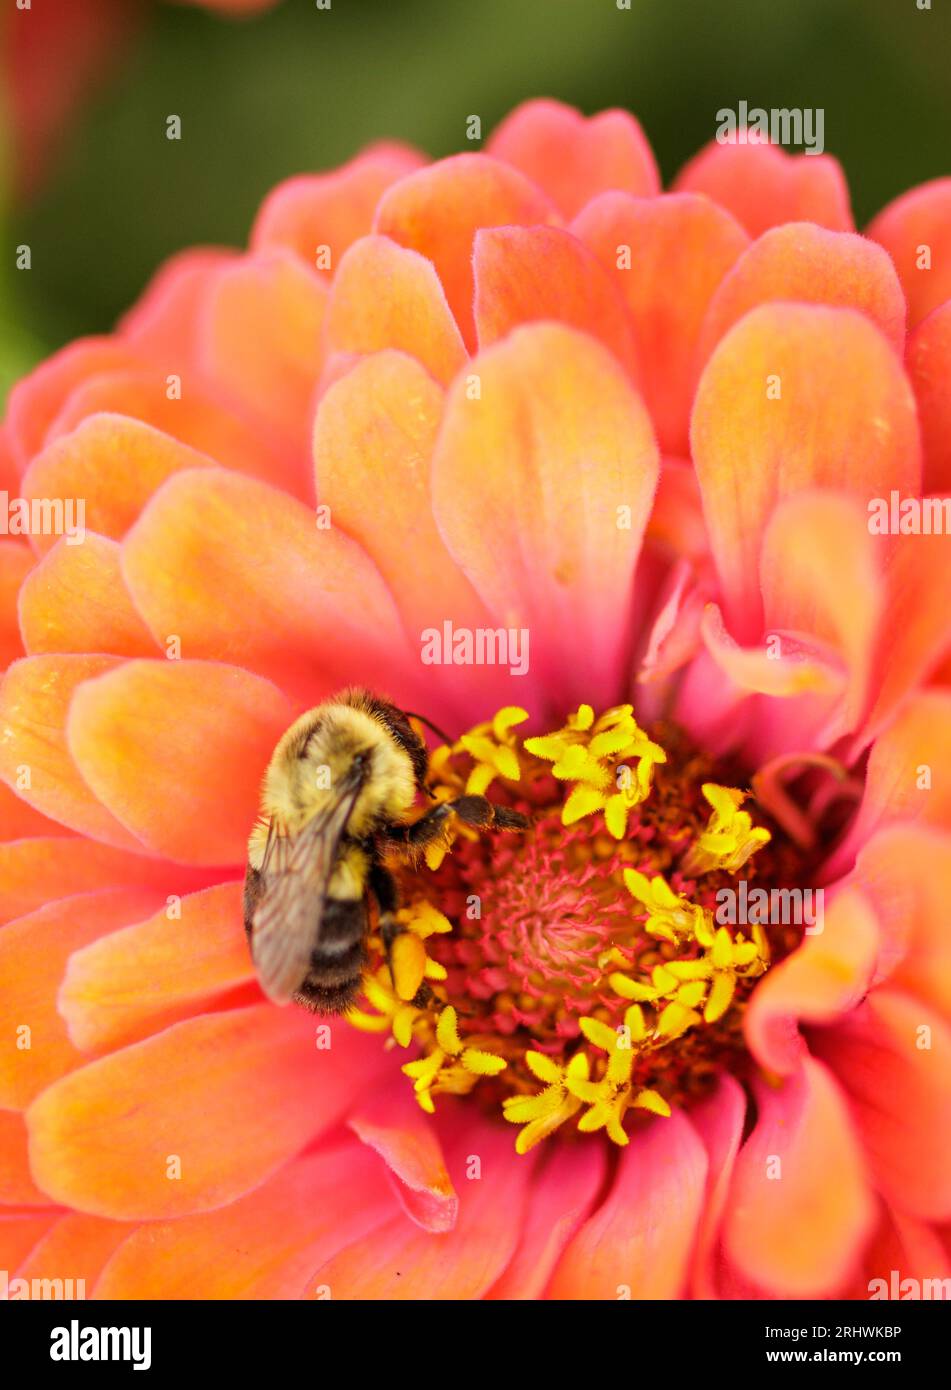 Bombus impatiens (Common Eastern Bumble bee) - Contea di Hall, Georgia. Un'ape bumble raccoglie nettare dalla colorata fioritura di una zinnia. Foto Stock